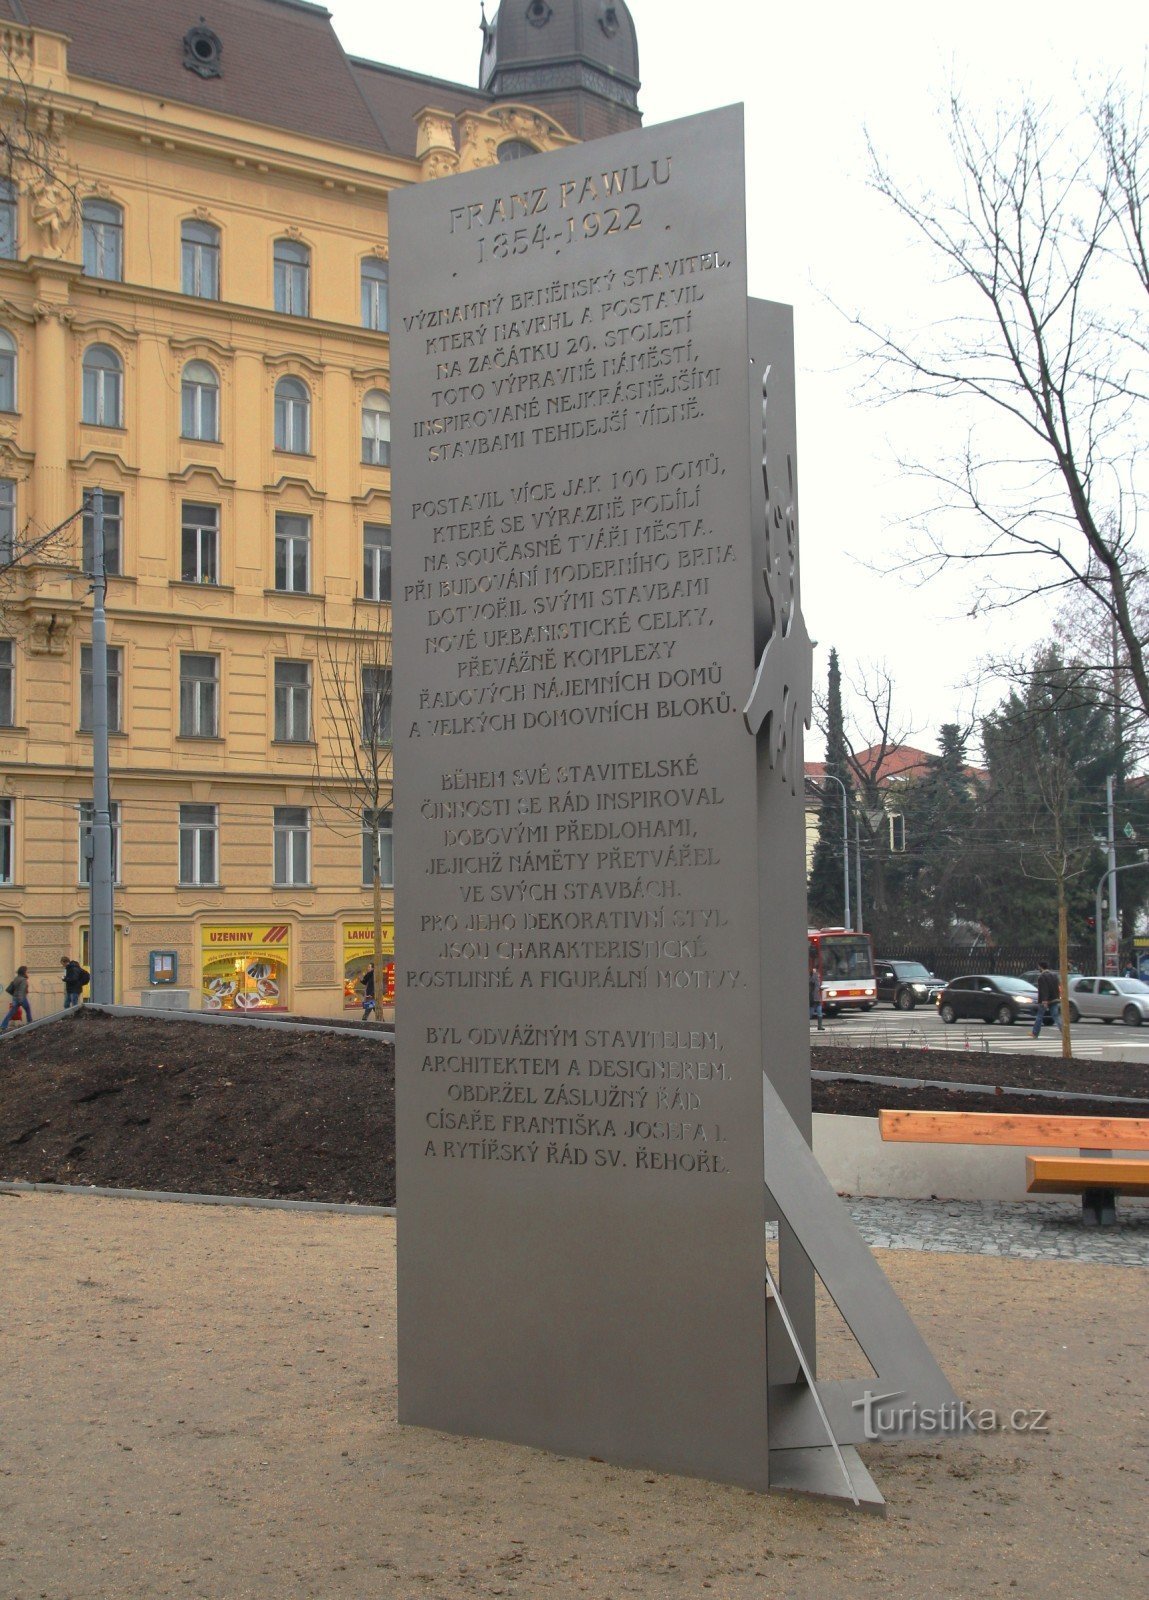 Đài tưởng niệm Franz Paul